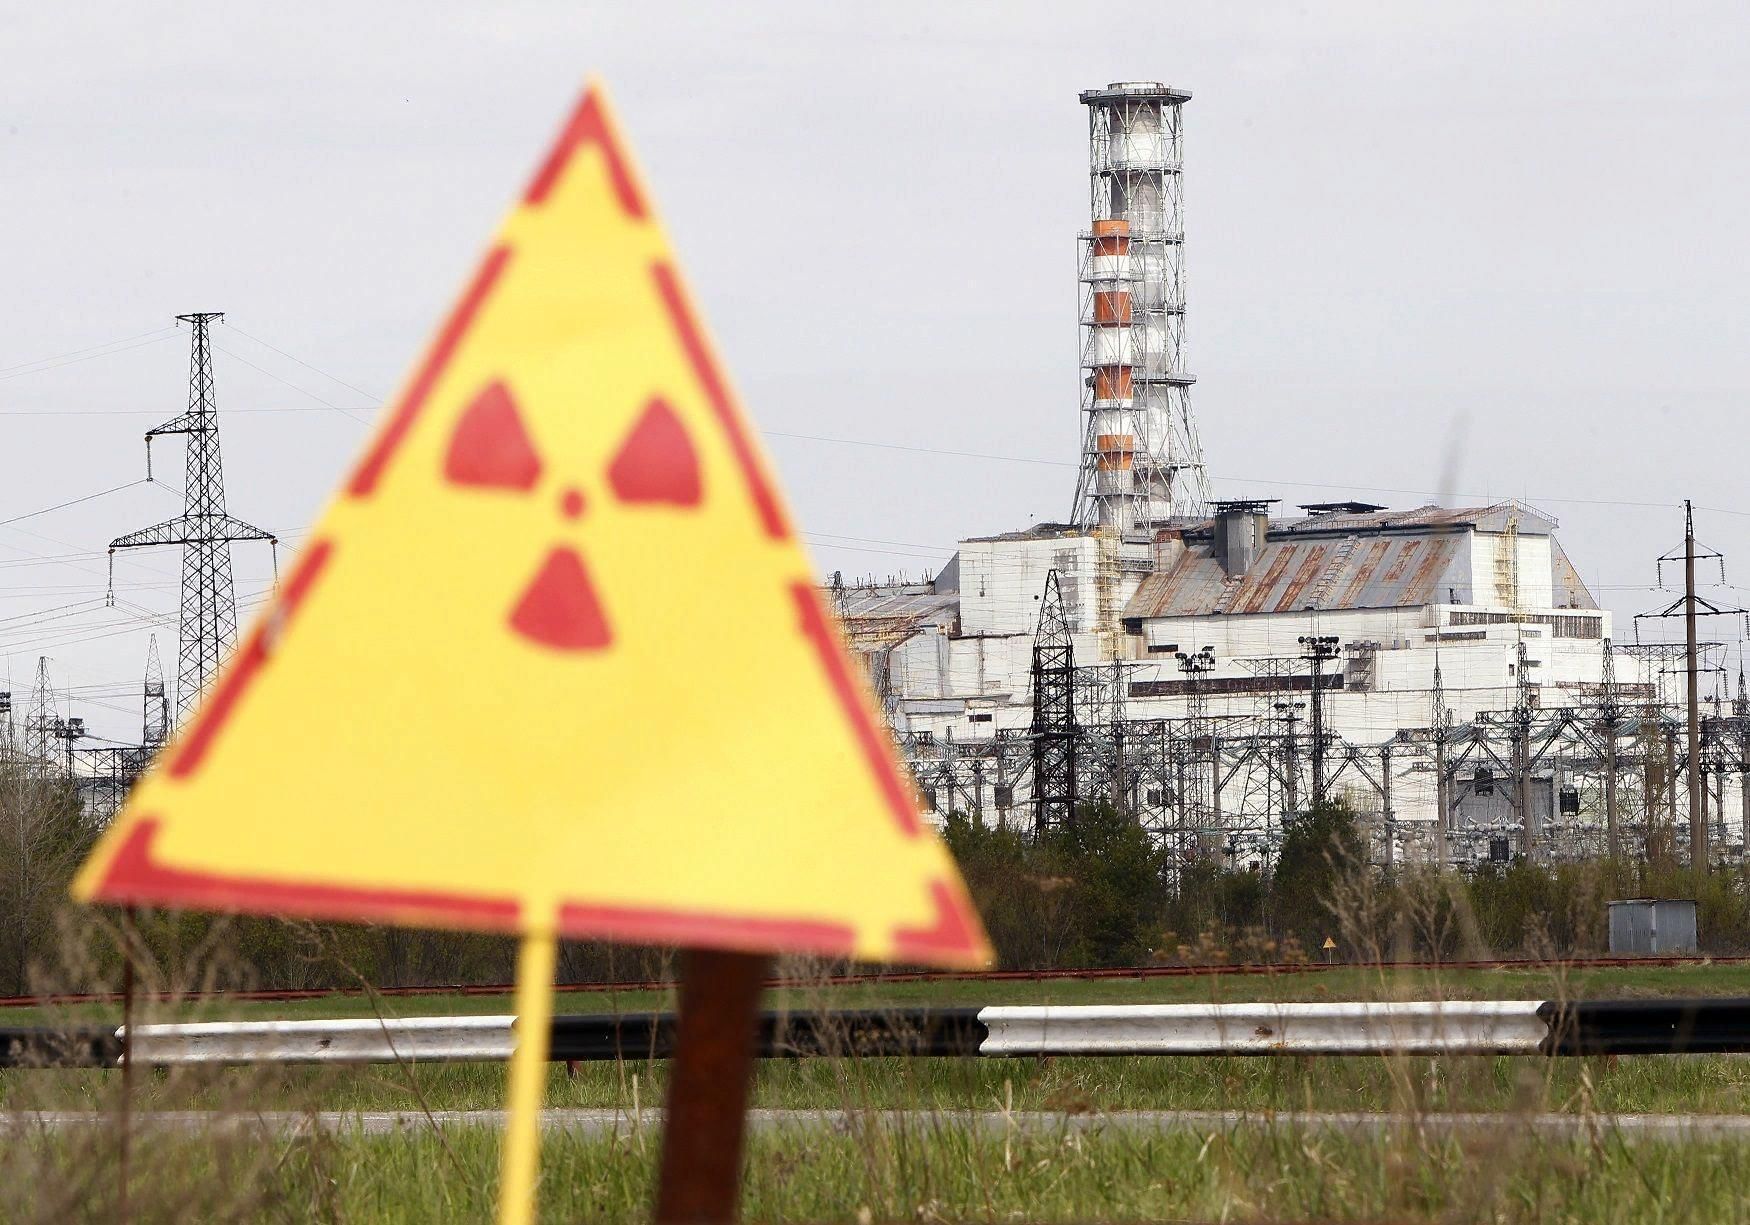 Ядерный взрыв аэс. Авария на ЧАЭС 1986 Чернобыль. ЧАЭС 1986 26 апреля. Чернобыль авария на АЭС взрыв. Чернобыльская АЭС АЭС авария.